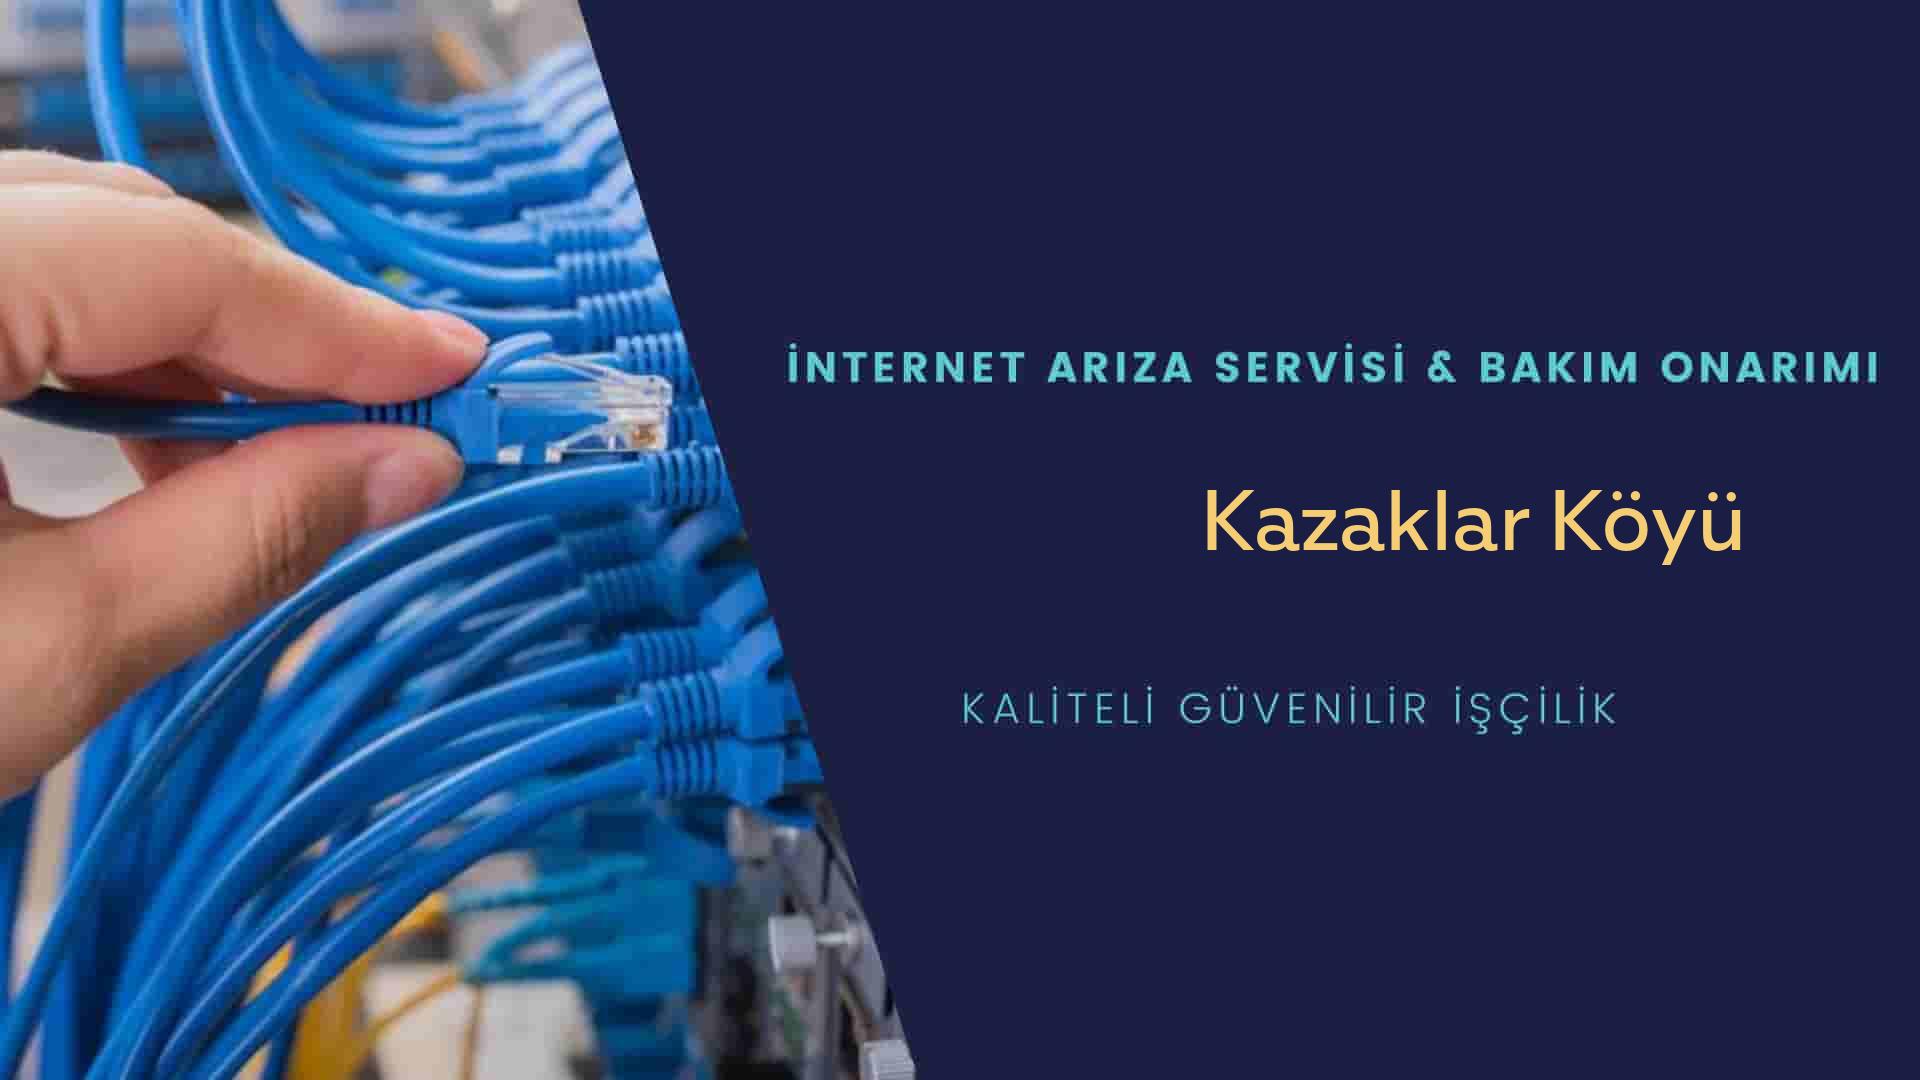 Kazaklar Köyü internet kablosu çekimi yapan yerler veya elektrikçiler mi? arıyorsunuz doğru yerdesiniz o zaman sizlere 7/24 yardımcı olacak profesyonel ustalarımız bir telefon kadar yakındır size.